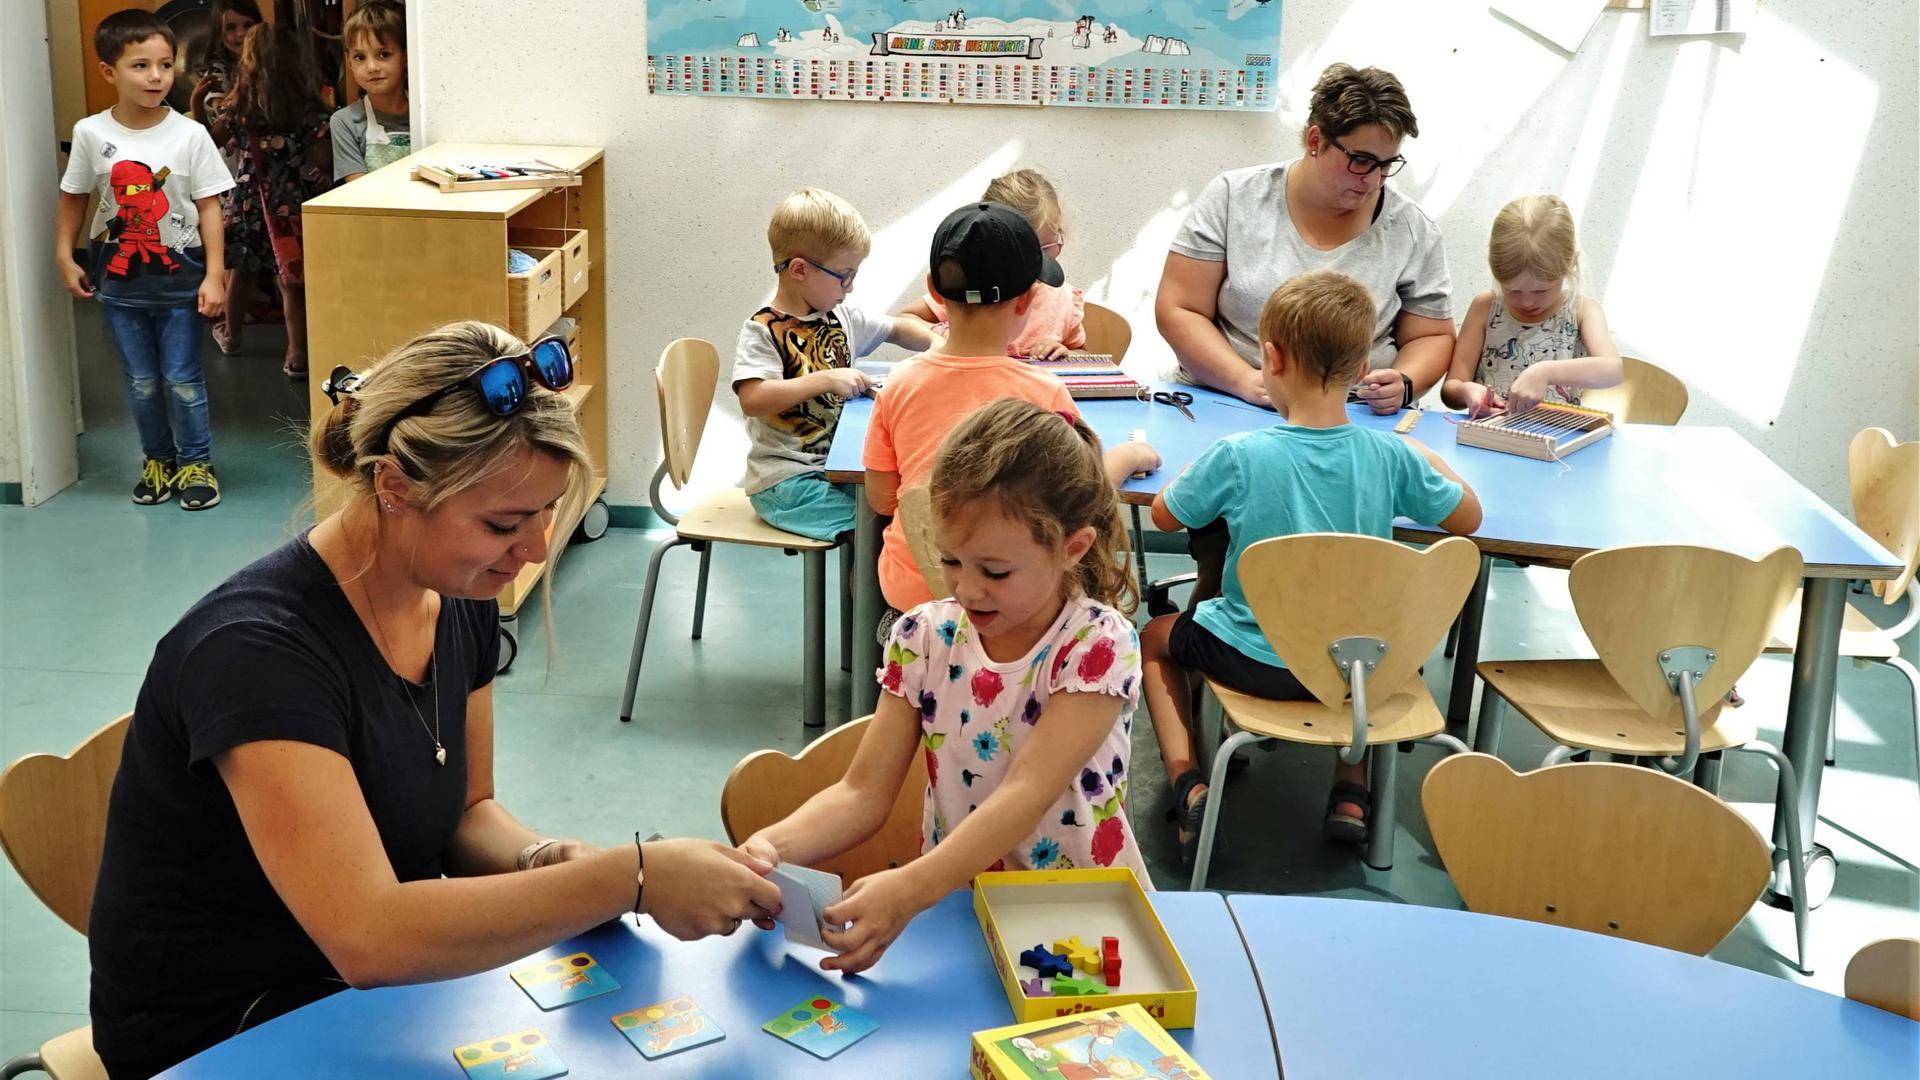 Der Kindergarten Fliegenpilz in Gernsbach soll bis 2020 um 70 Plätze erweitert werden. Fotos vom 17.07.2019 für Berichte über den Kindergarten. Stichworte: Kita Kiga Kindi Kindertagesstätte Kinderbetreuung Kinder Betreuung